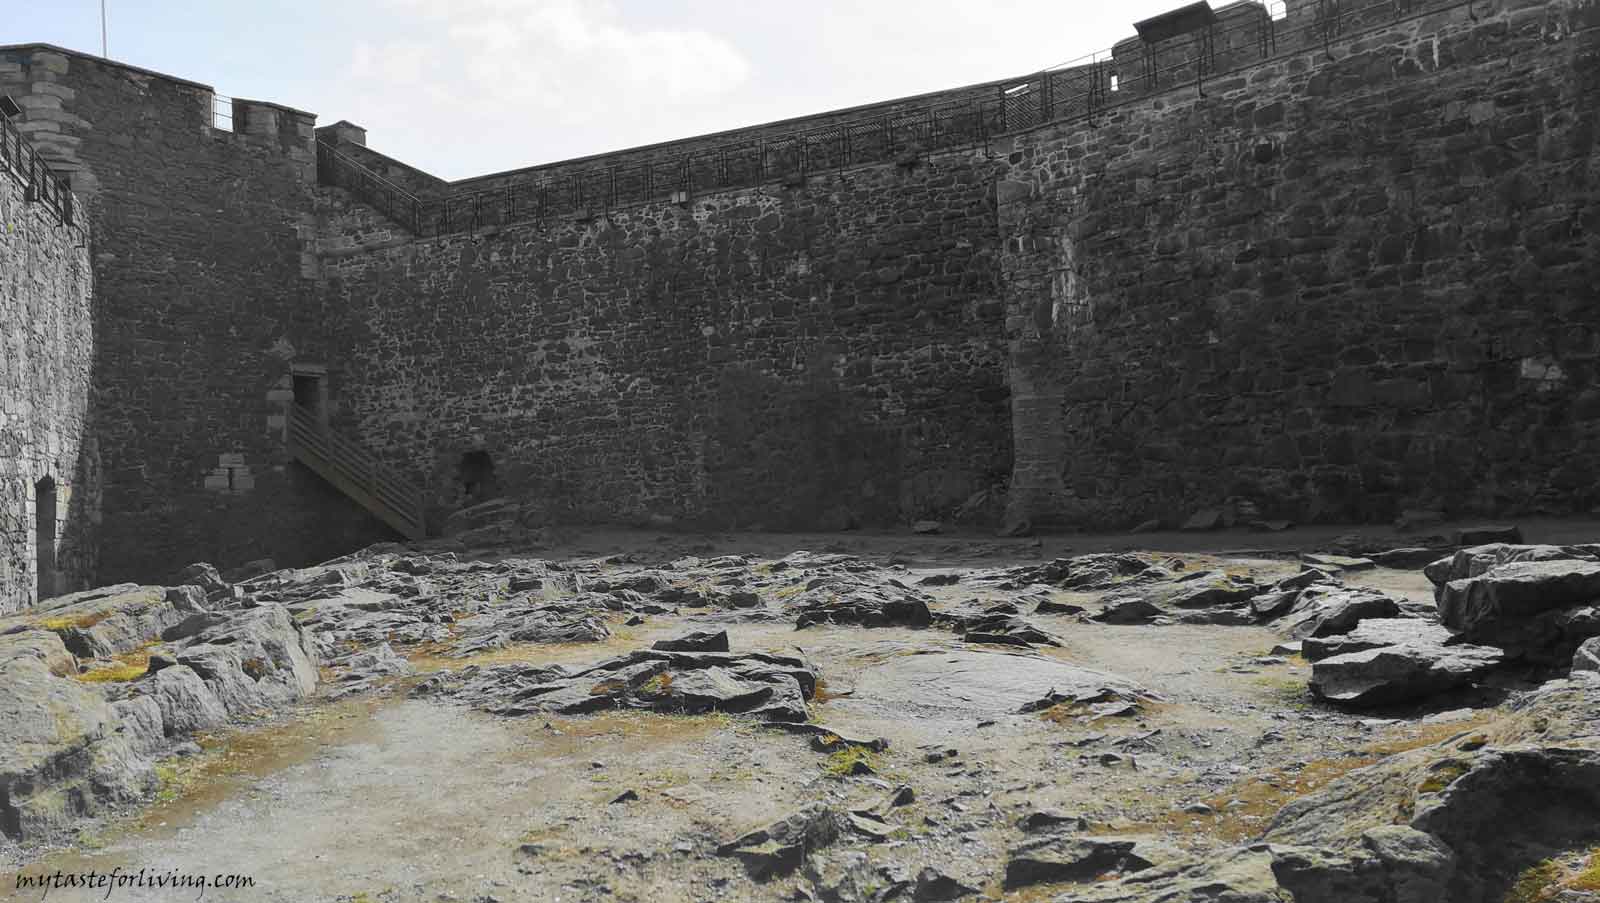 Замъкът на Чернотата (Blackness castle) е крепост от 15-ти век, близо до село Blackness, Шотландия, разположен на южния бряг на река Фирт ъф Форт (Firth of Forth). Използван е за филмова локация на сериала „Друговремец“ (Outlander) под името Форт Уилям, където главния герой Джейми Фрейзър е бичуван от Черния Джак Рандал. 